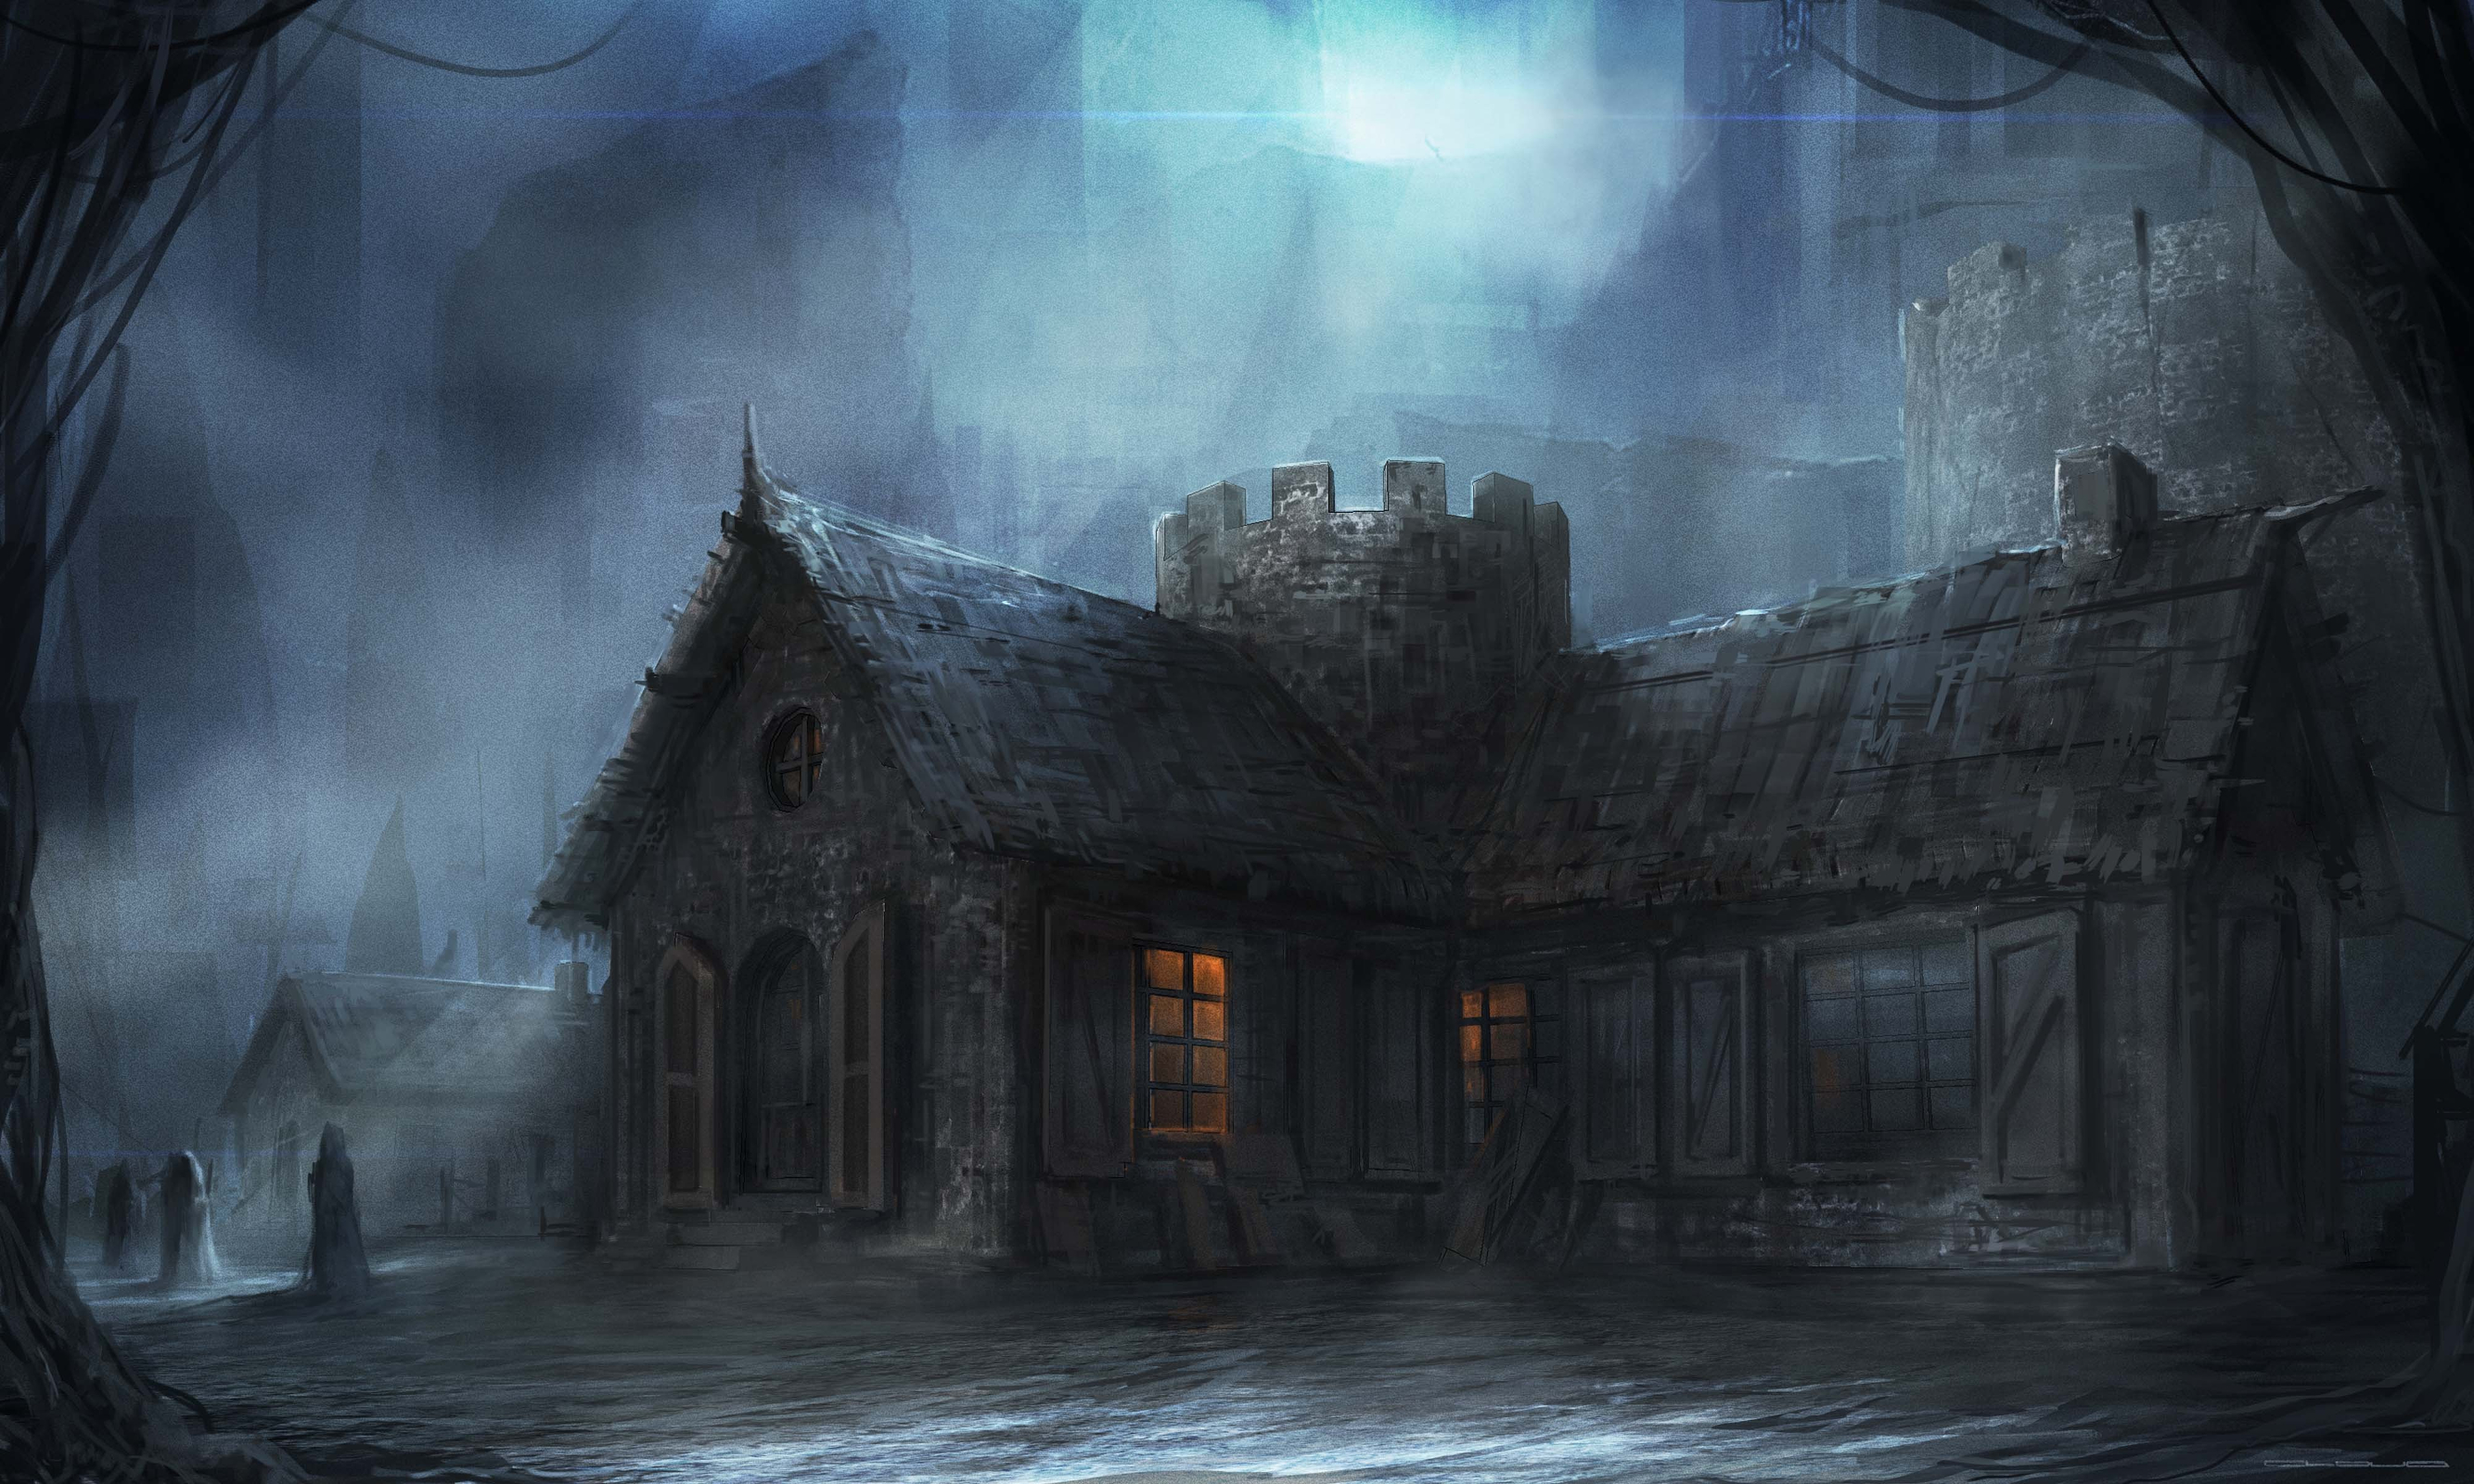 Old Church at Night by Darkcloud013